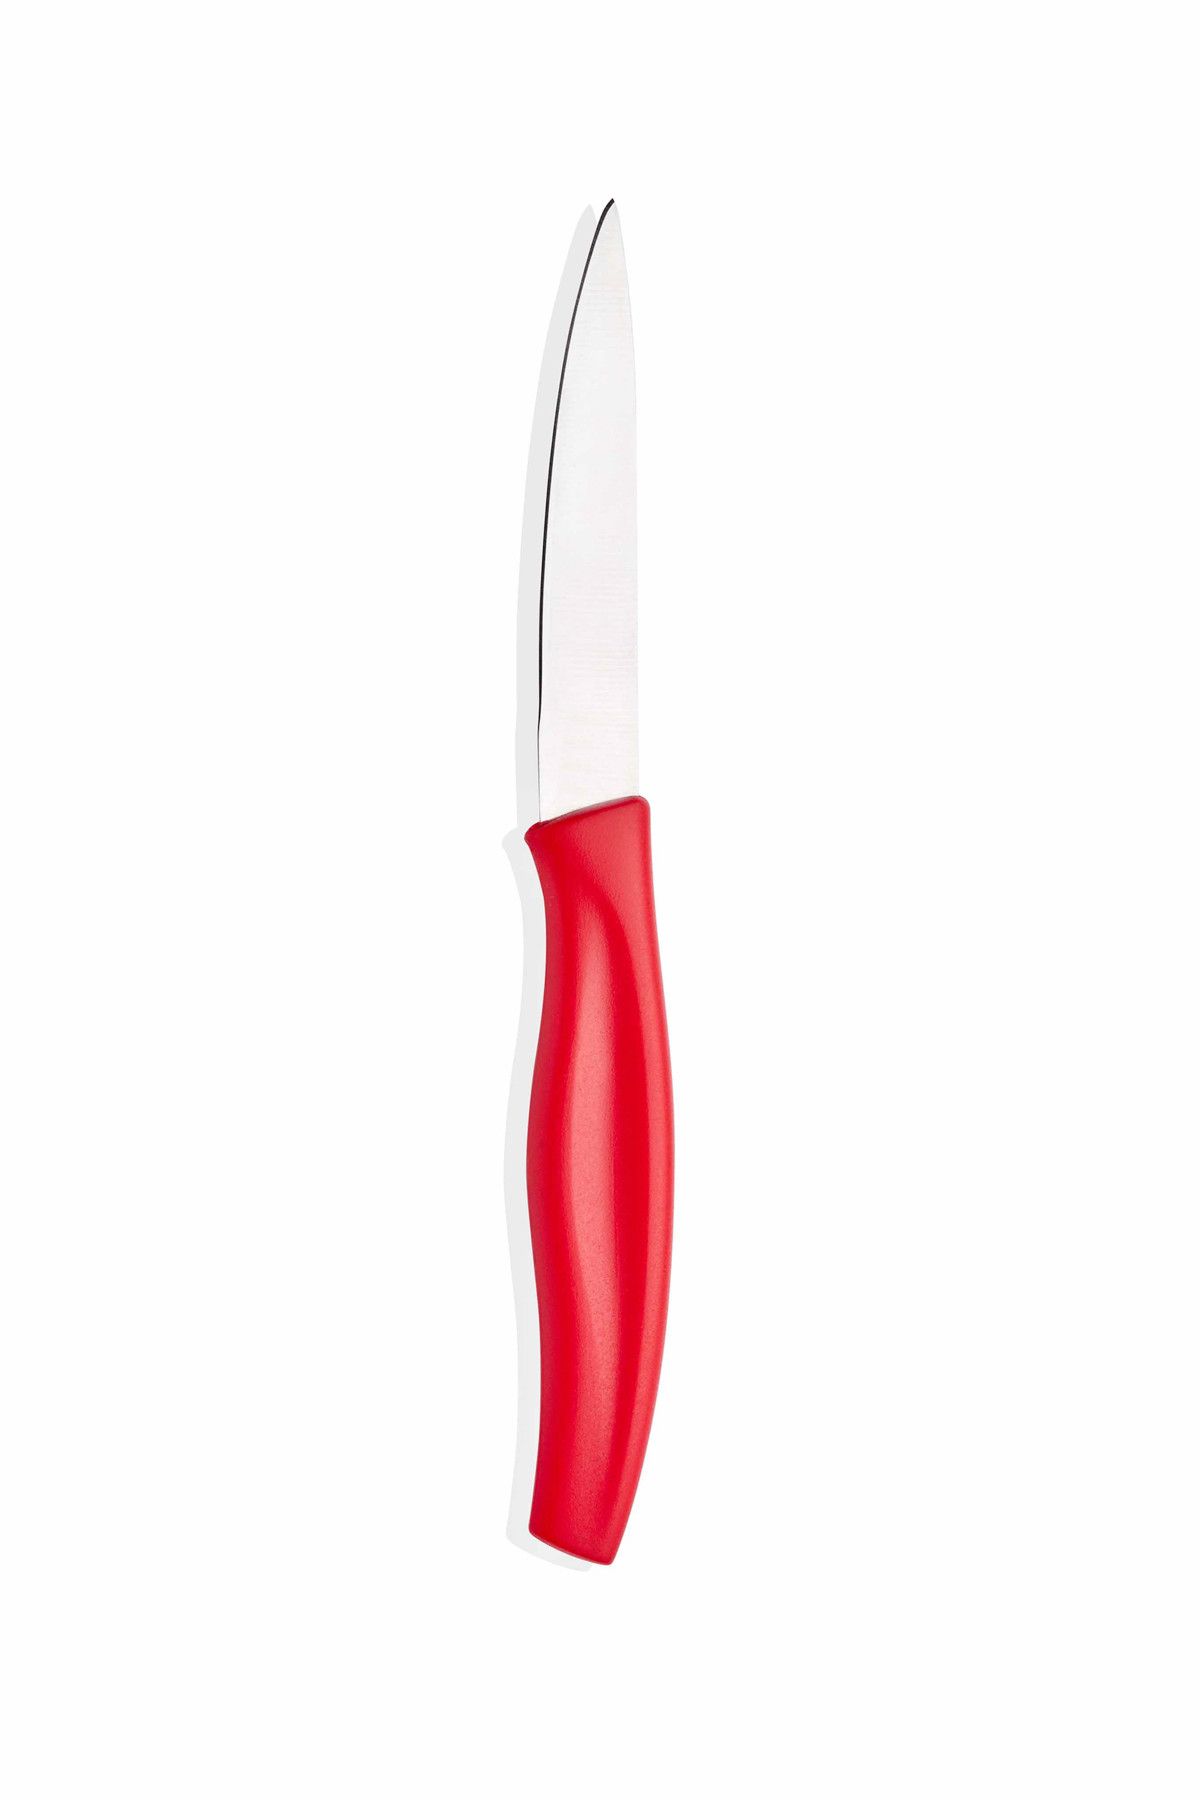 The Mia Cutt Mutfak Bıçağı 9 Cm - Kırmızı CUTT0023